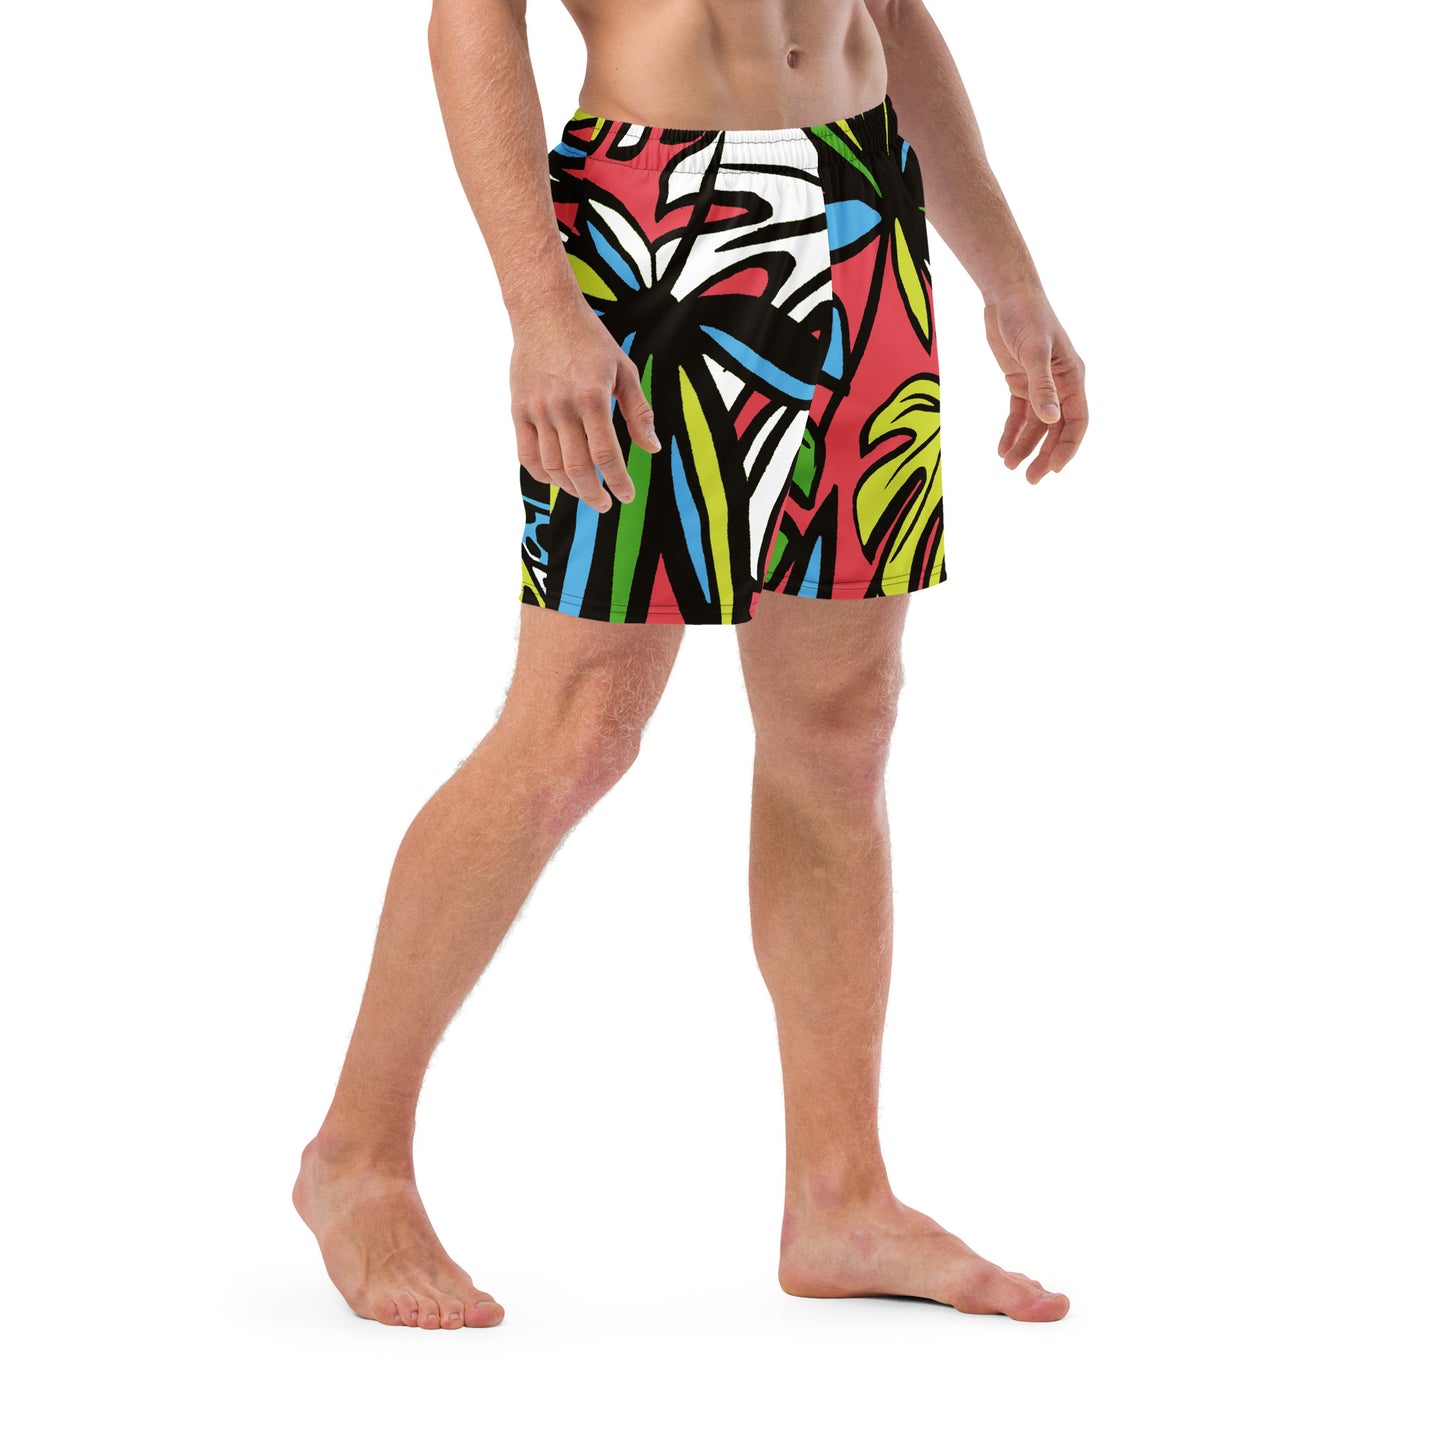 JUNGEL - Men's swim trunks